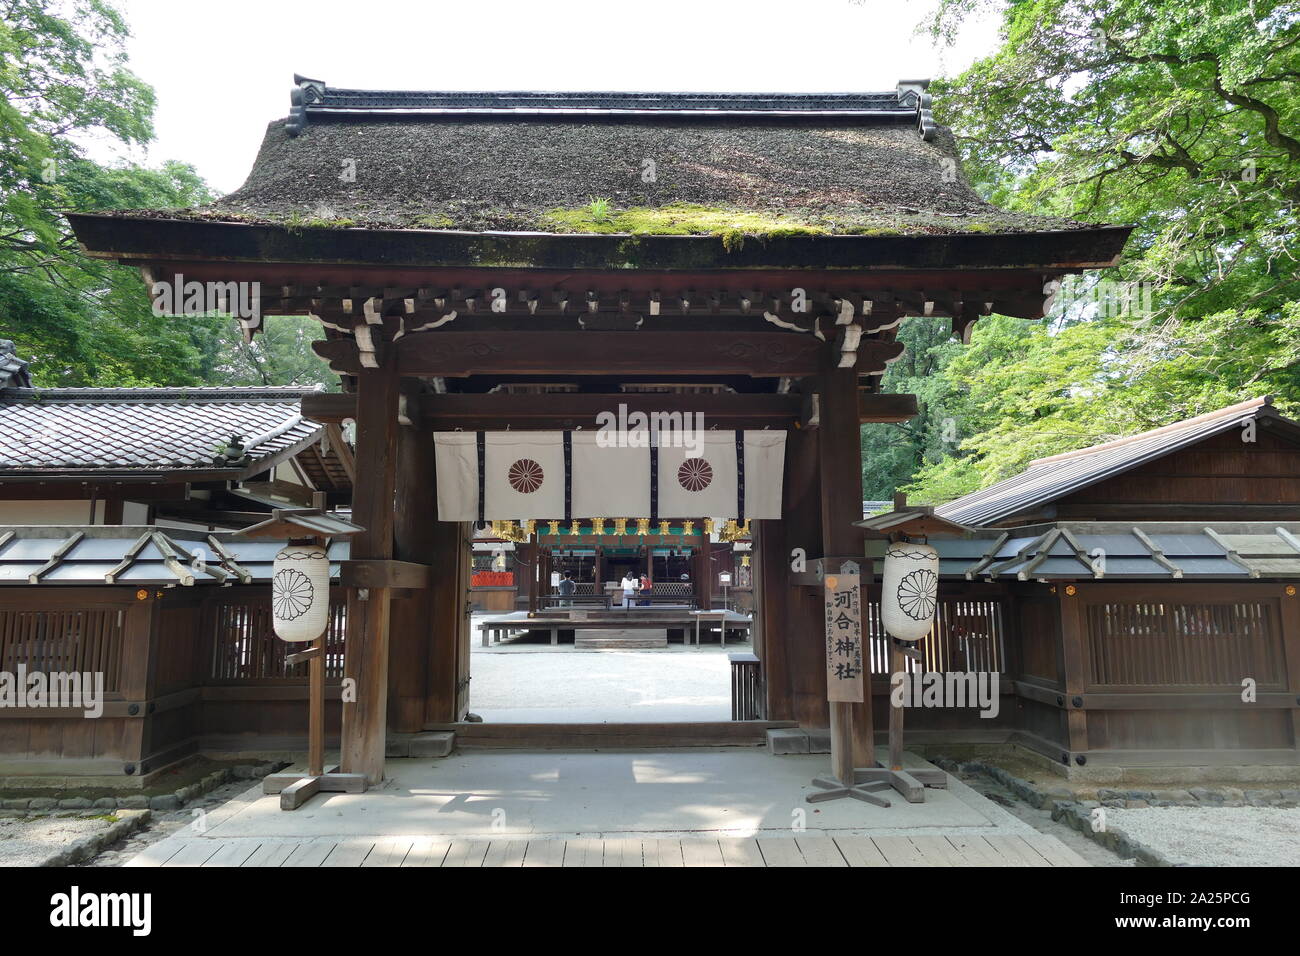 Santuario Shimogamo (Shimogamo-jinja), santuario scintoista nel Shimogamo distretto della città di Kyoto's Sakyo Ward. Il suo nome formale è Kamo-mioya-jinja, è uno dei più antichi santuari Shintoisti in Giappone ed è uno dei diciassette monumenti storici di antiche di Kyoto che sono stati designati dall'UNESCO come Sito del Patrimonio Mondiale. Il nome di jinja identifica il Kamo famiglia di kami o divinità che vengono venerati. Il nome si riferisce anche all'ambito del santuario del legno nelle vicinanze Foto Stock